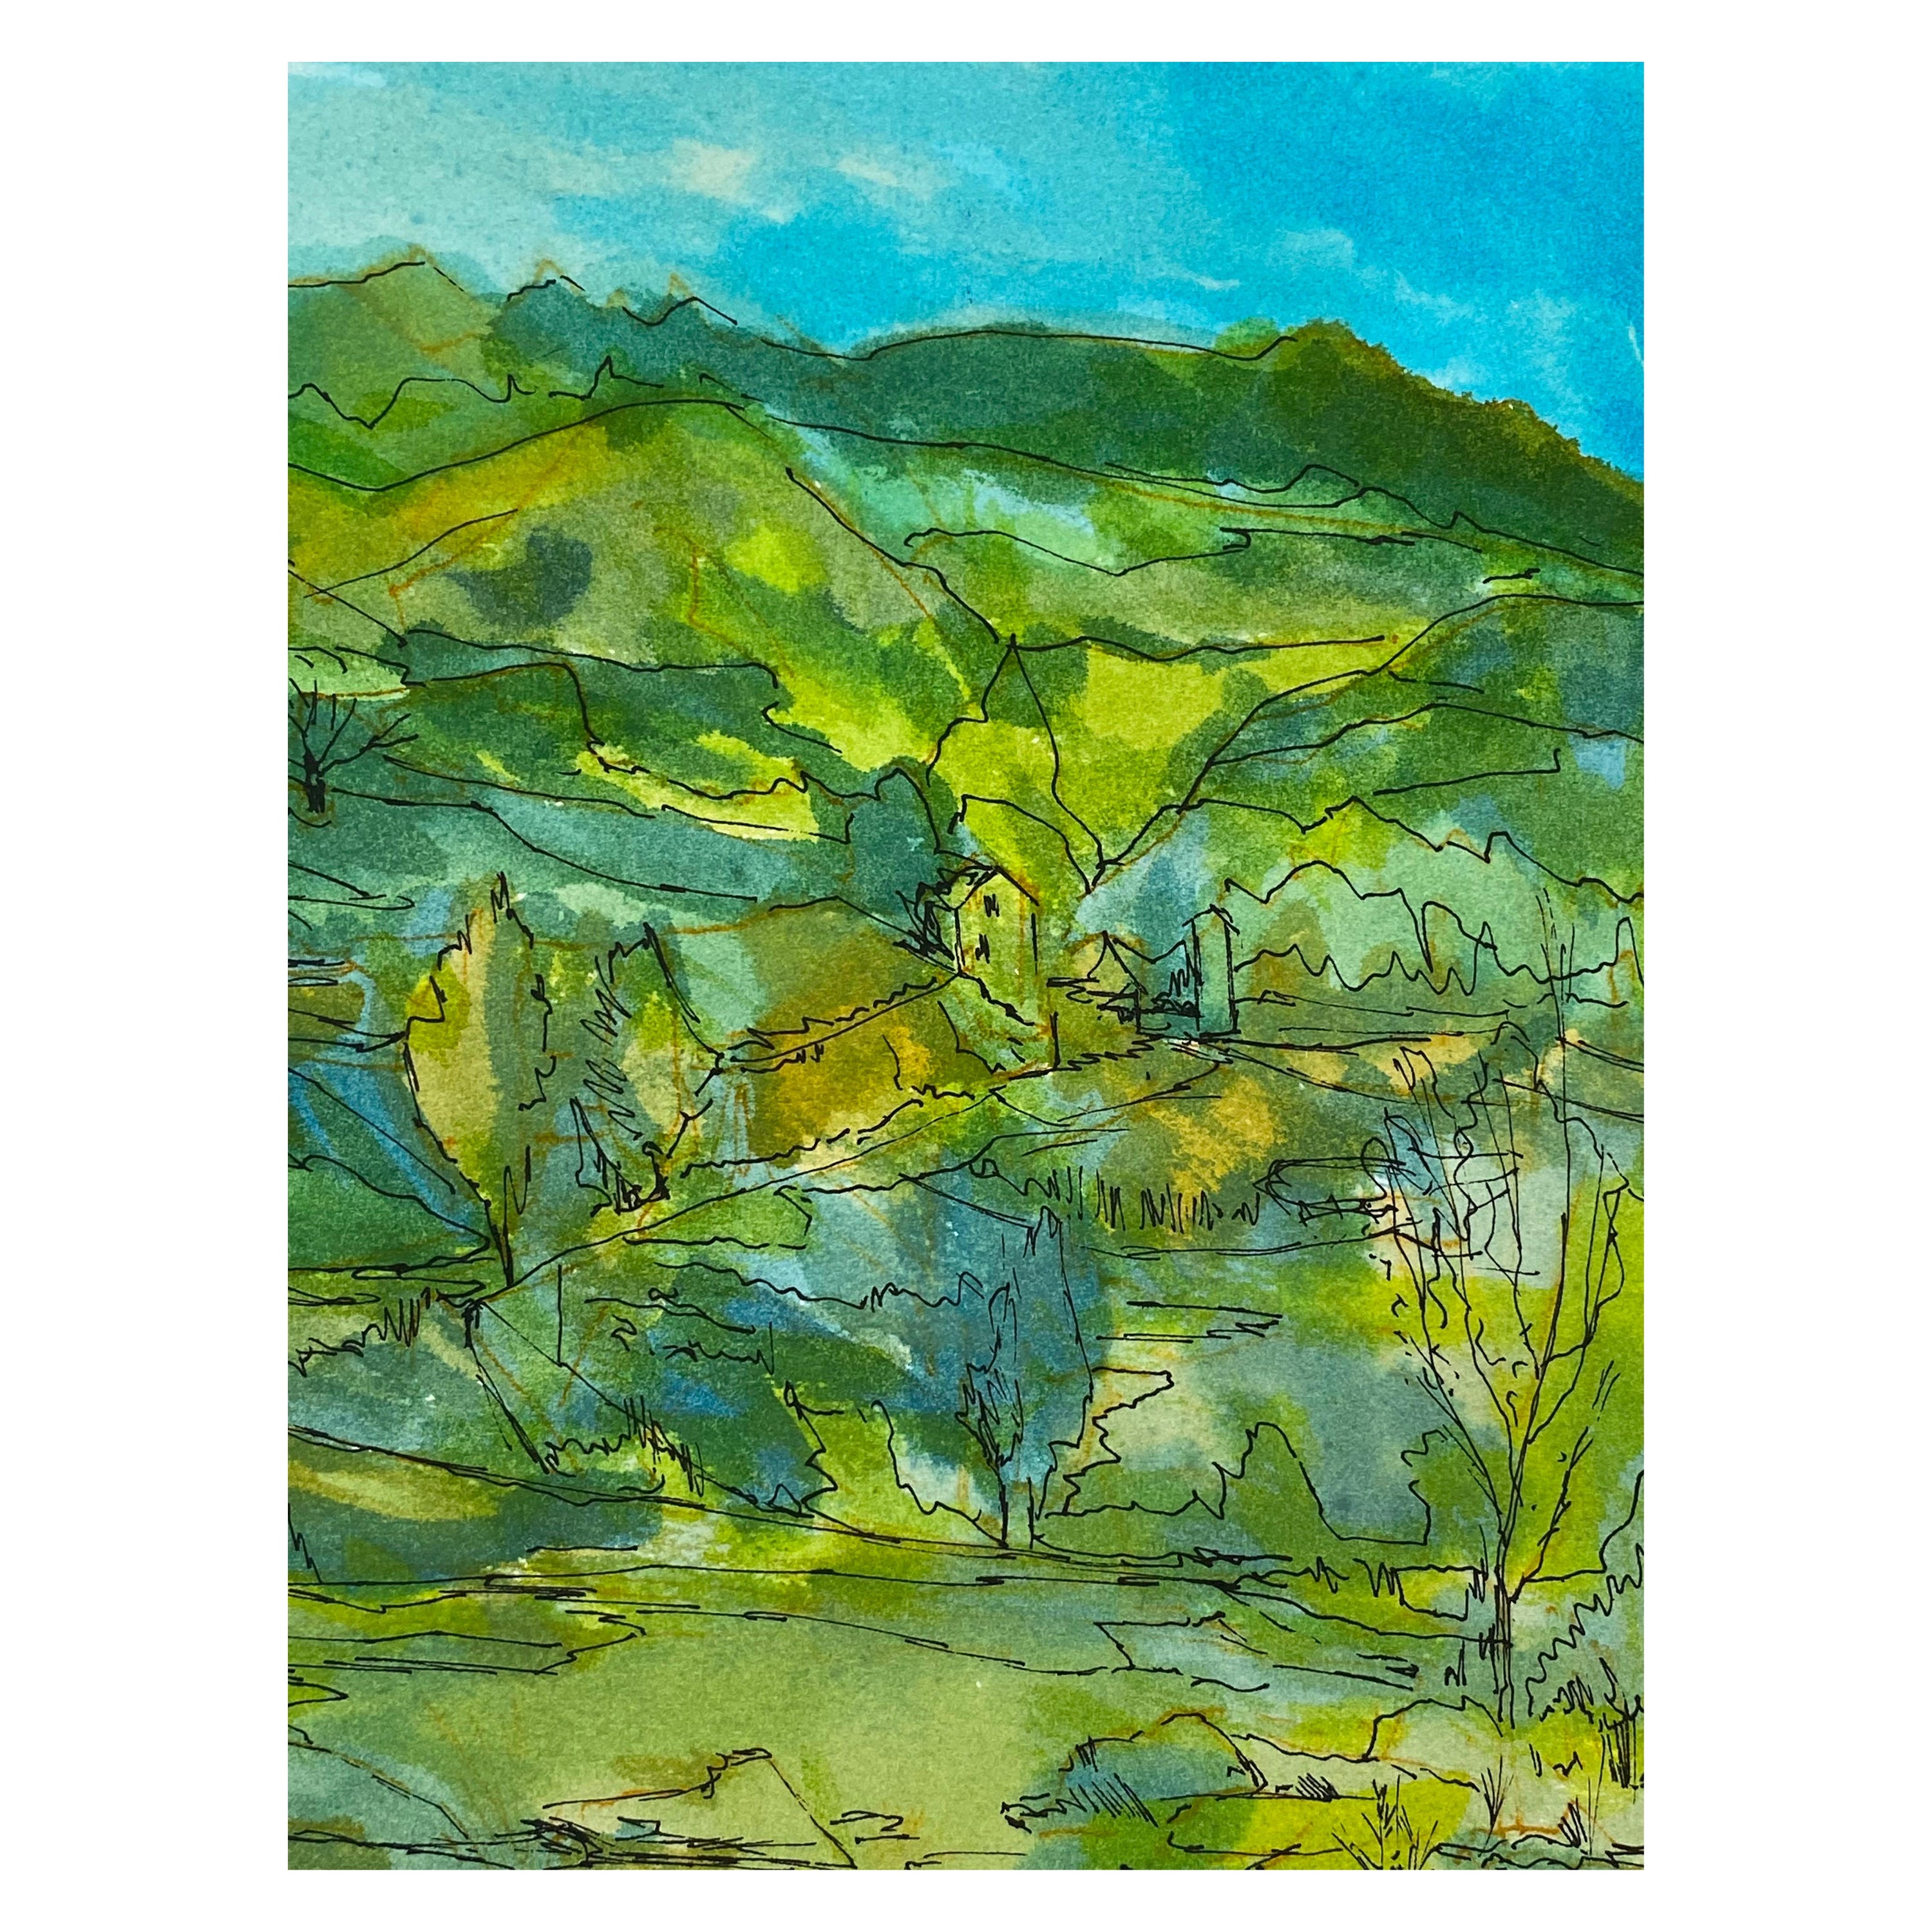 Peinture signée moderniste/ cubiste française des années 1950, paysage vert et bleu